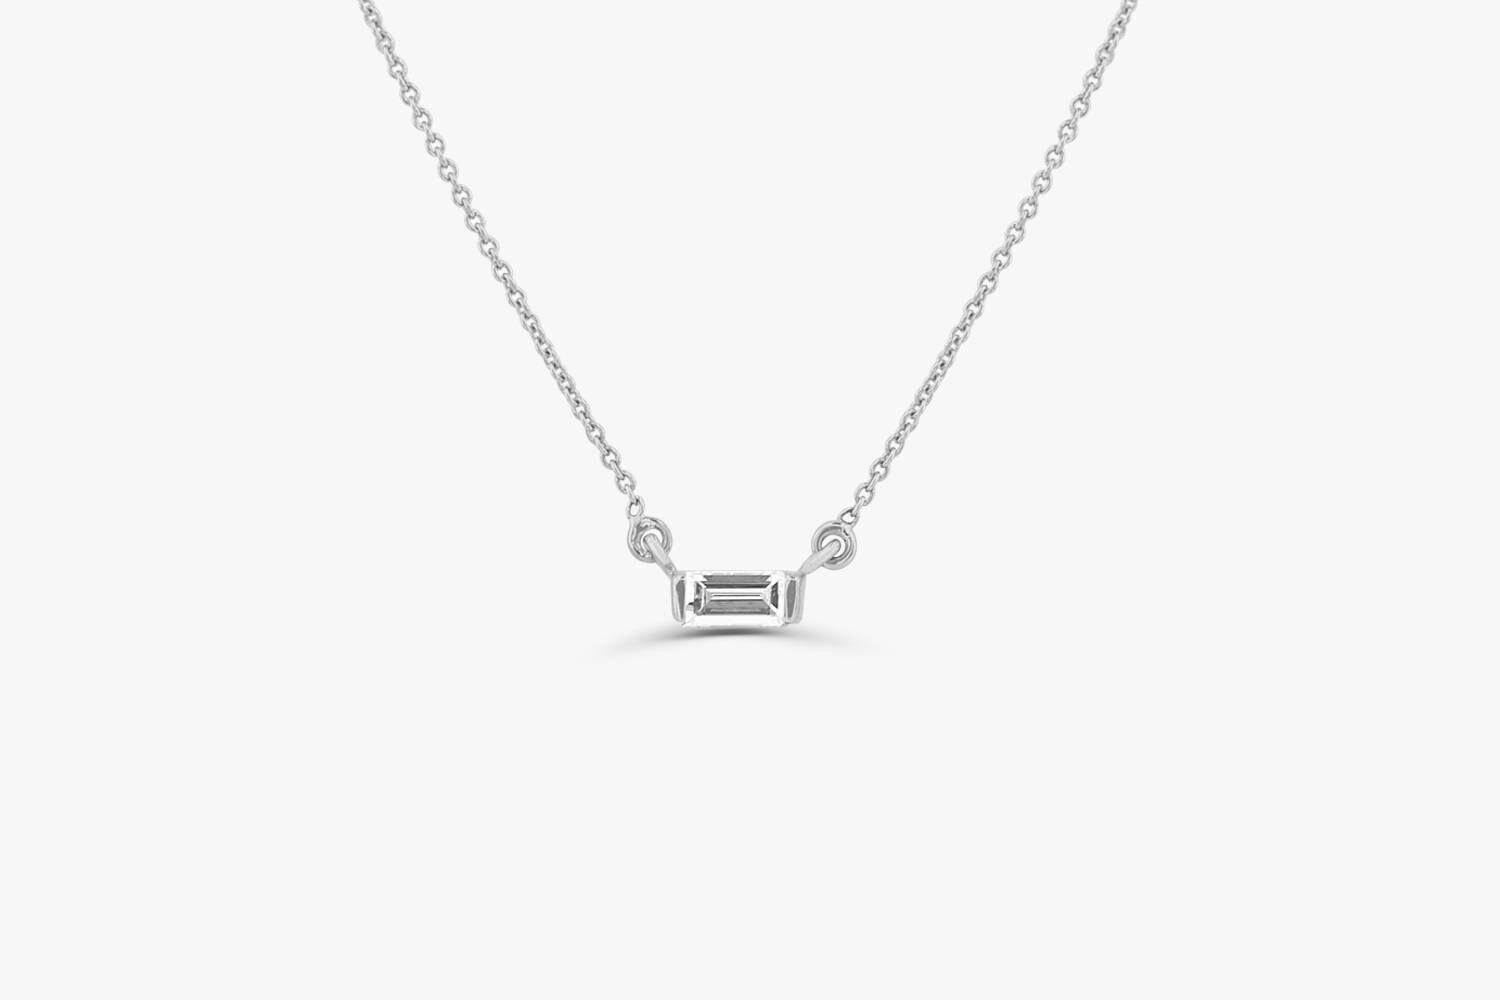 Baguette Diamond Necklace / 14k Gold Baguette Diamond Necklace - Etsy UK